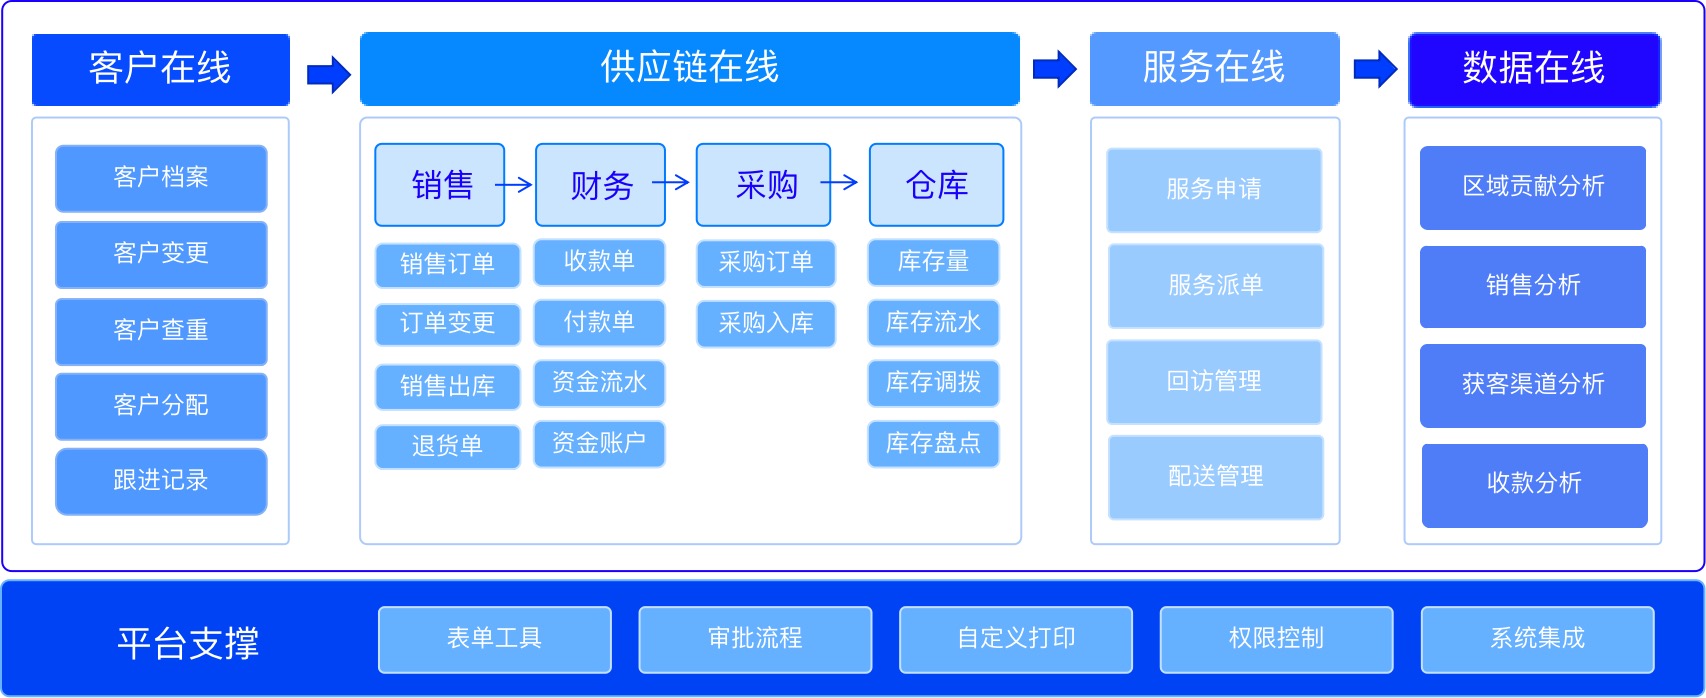 04-C2M供应链系统图.jpeg